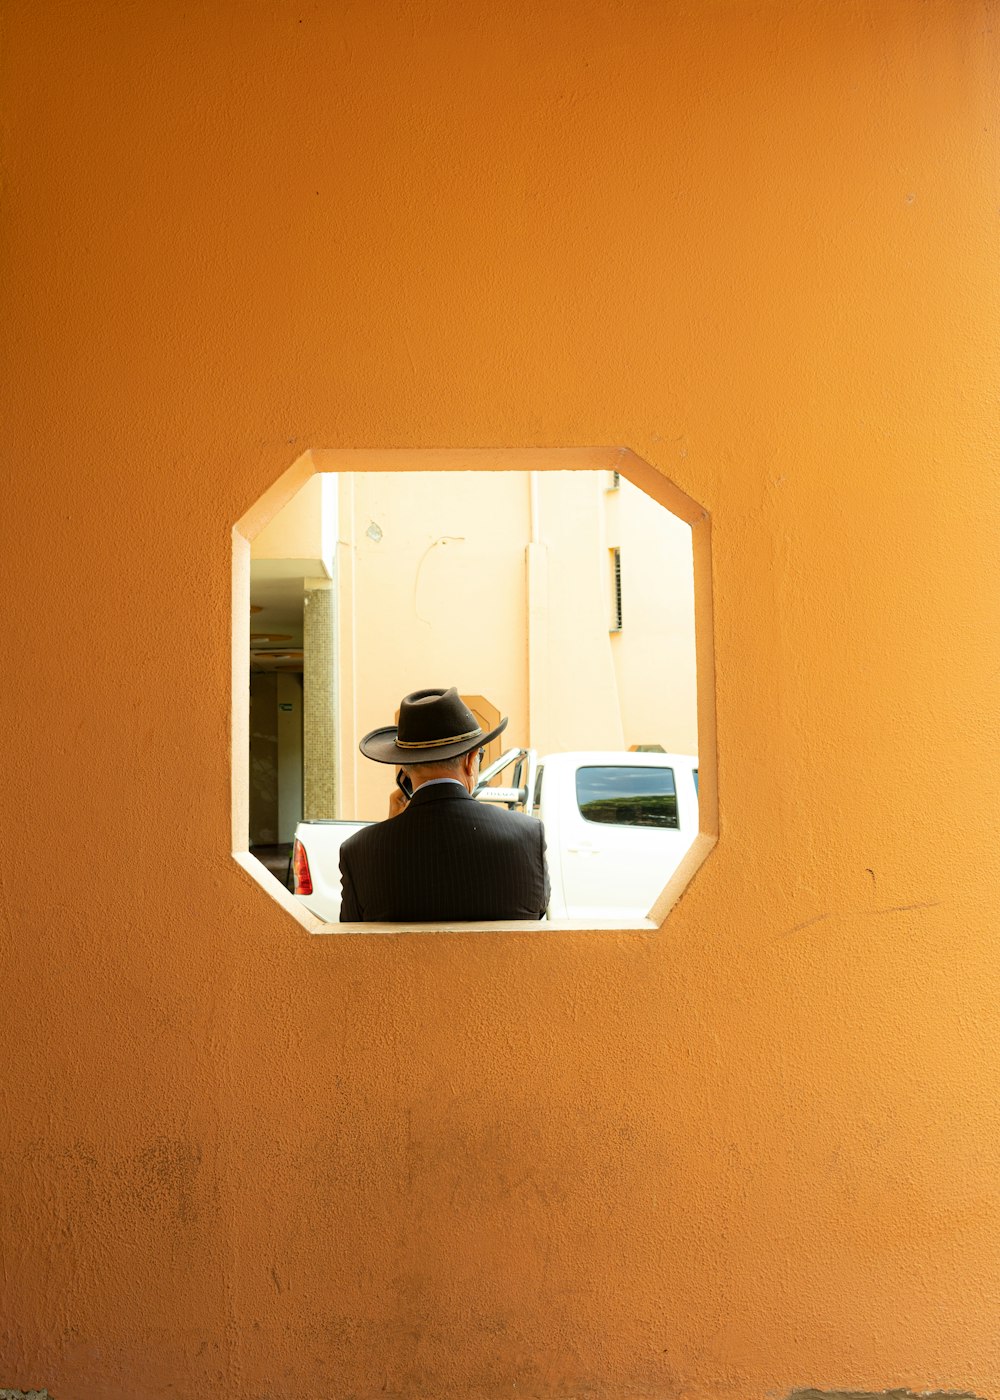 Una persona con sombrero mirando por una ventana